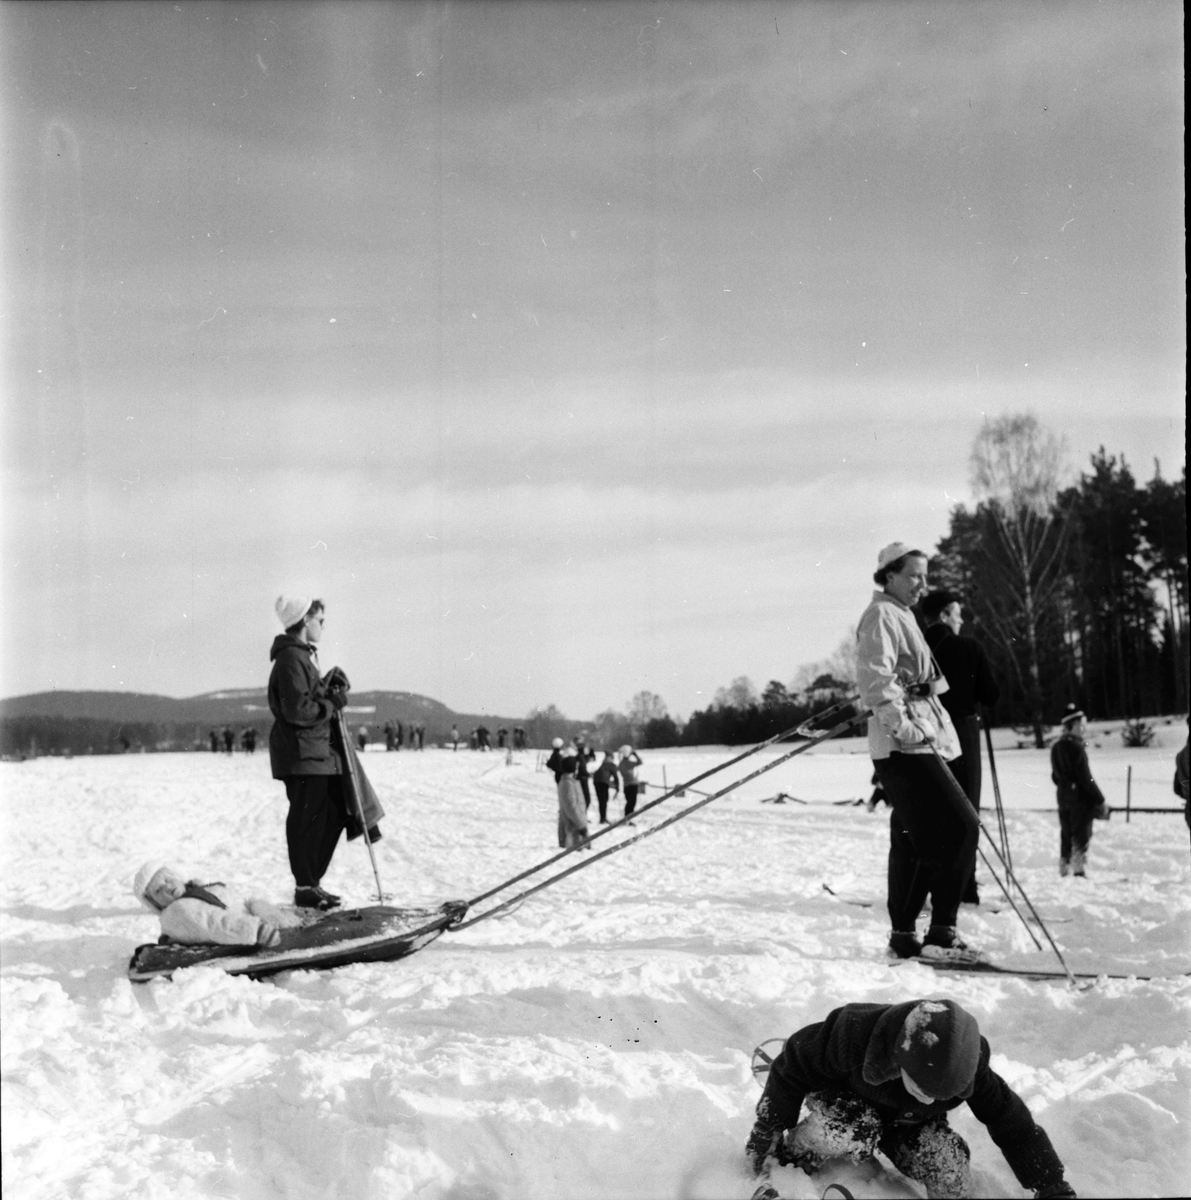 Arbrå,
Slädfärd f. SMF juniorer,
1956